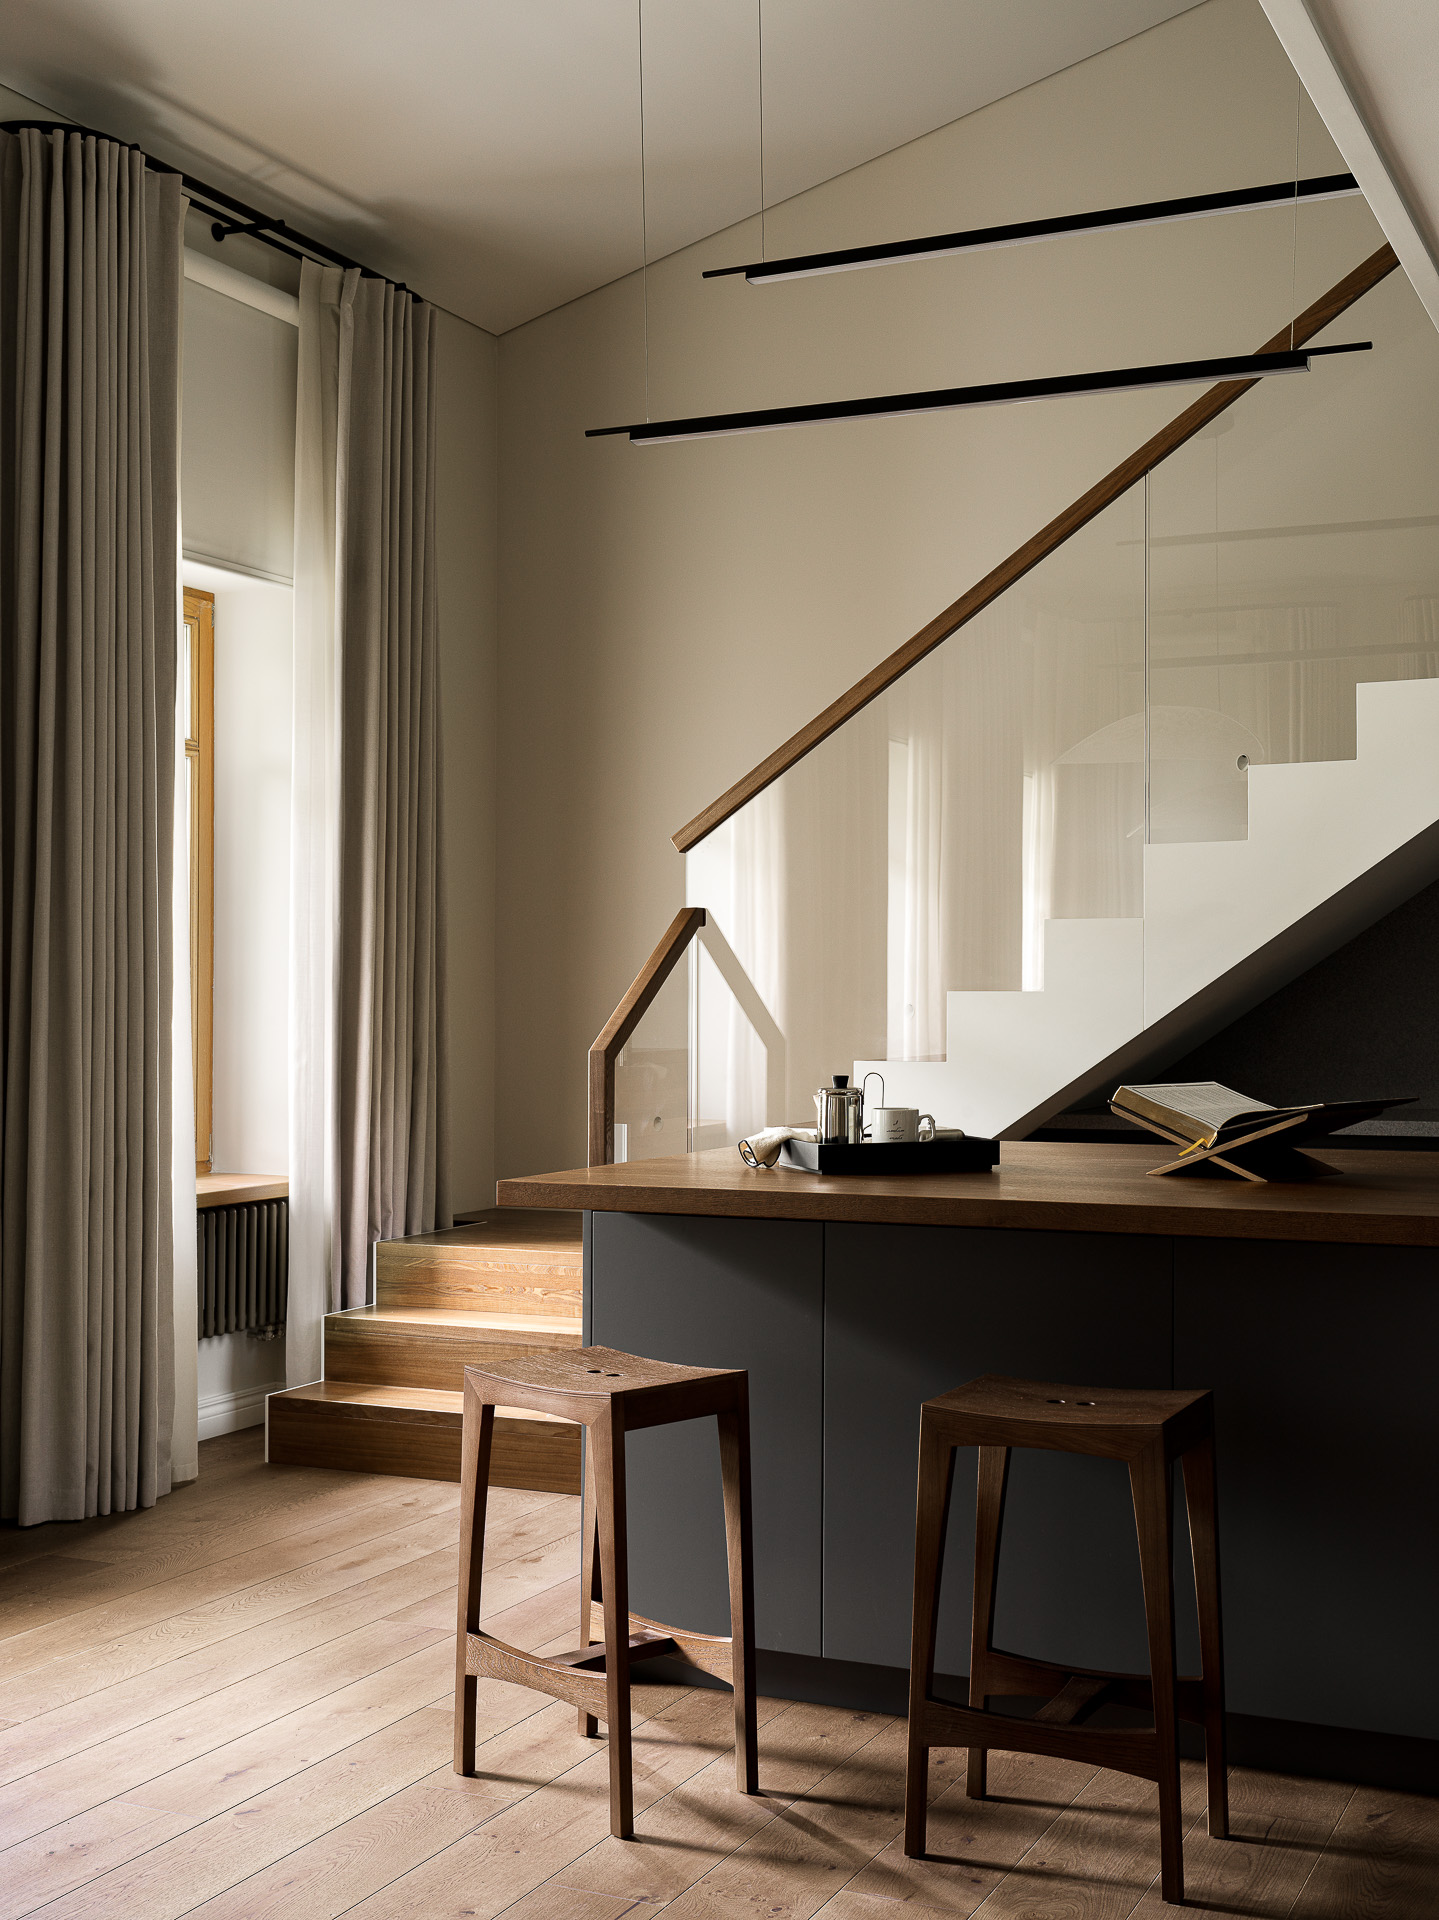 Фото интерьера, Проект 2-х уровневая квартира - Квартира на крестовском острове, Автор проекта: Дизайнеры Анастасия 